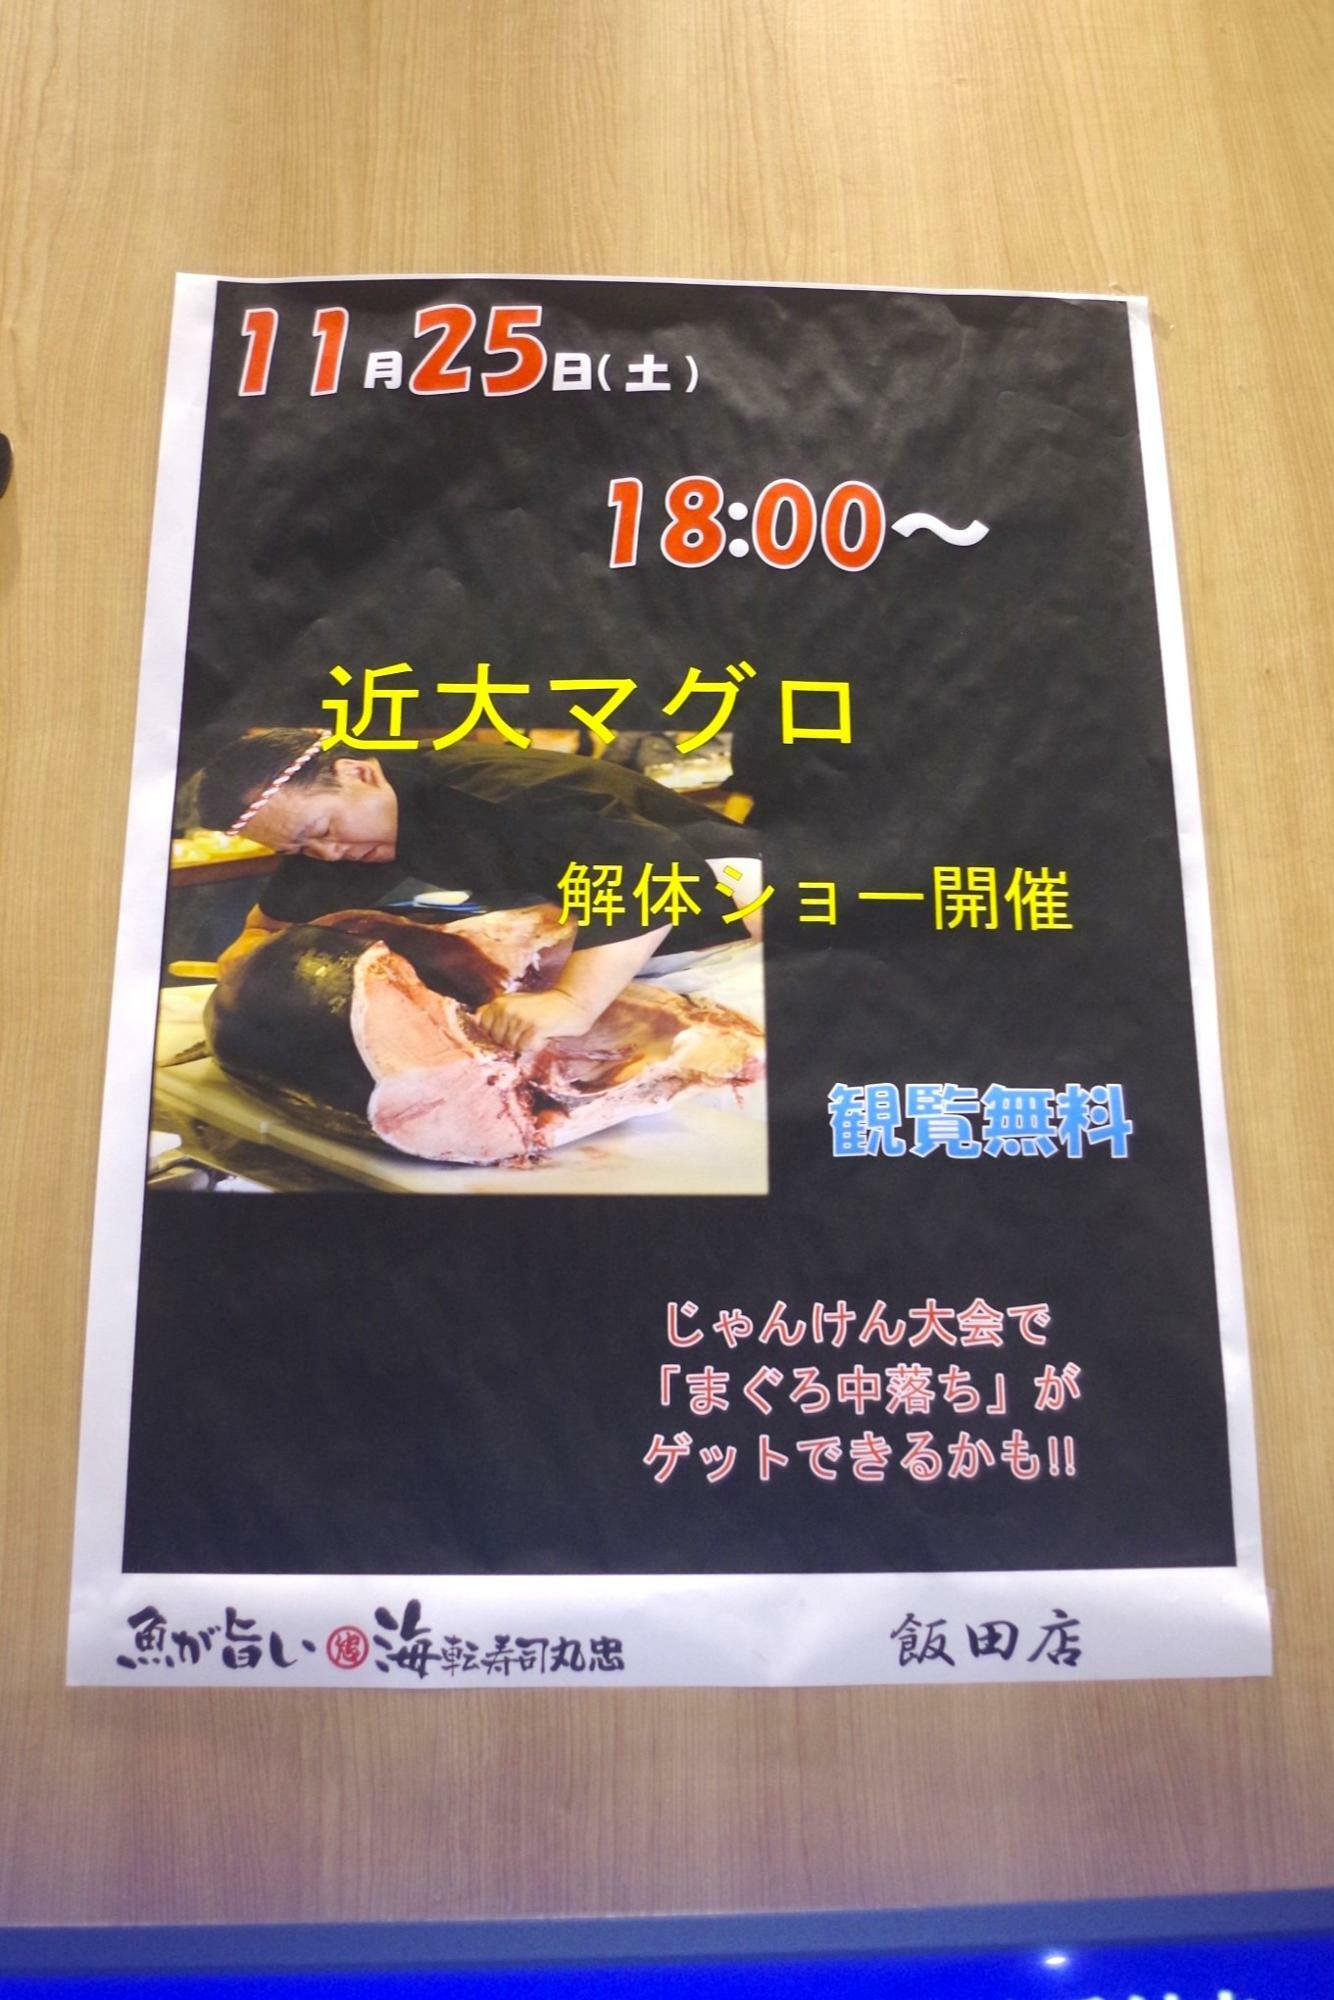 海転寿司丸忠アピタ飯田店では、毎年1～2回マグロ解体ショーが行われているそうです